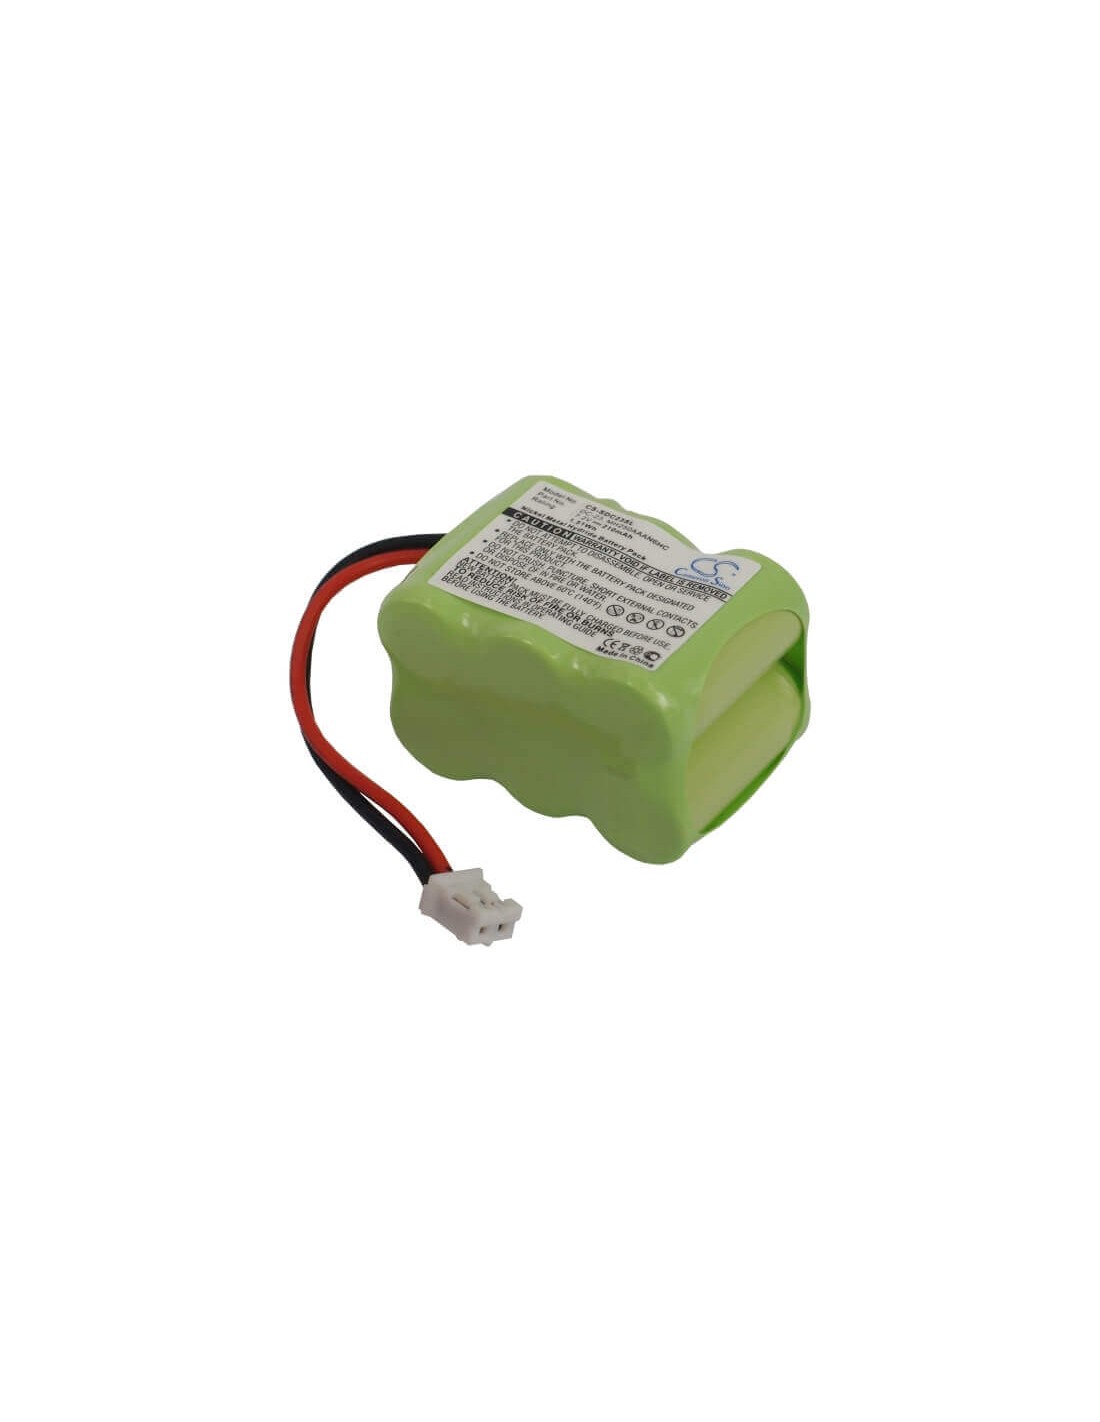 Battery for Sportdog Sd-800 Transmitter, Sporthunter Sd-800 7.2V, 210mAh - 1.51Wh